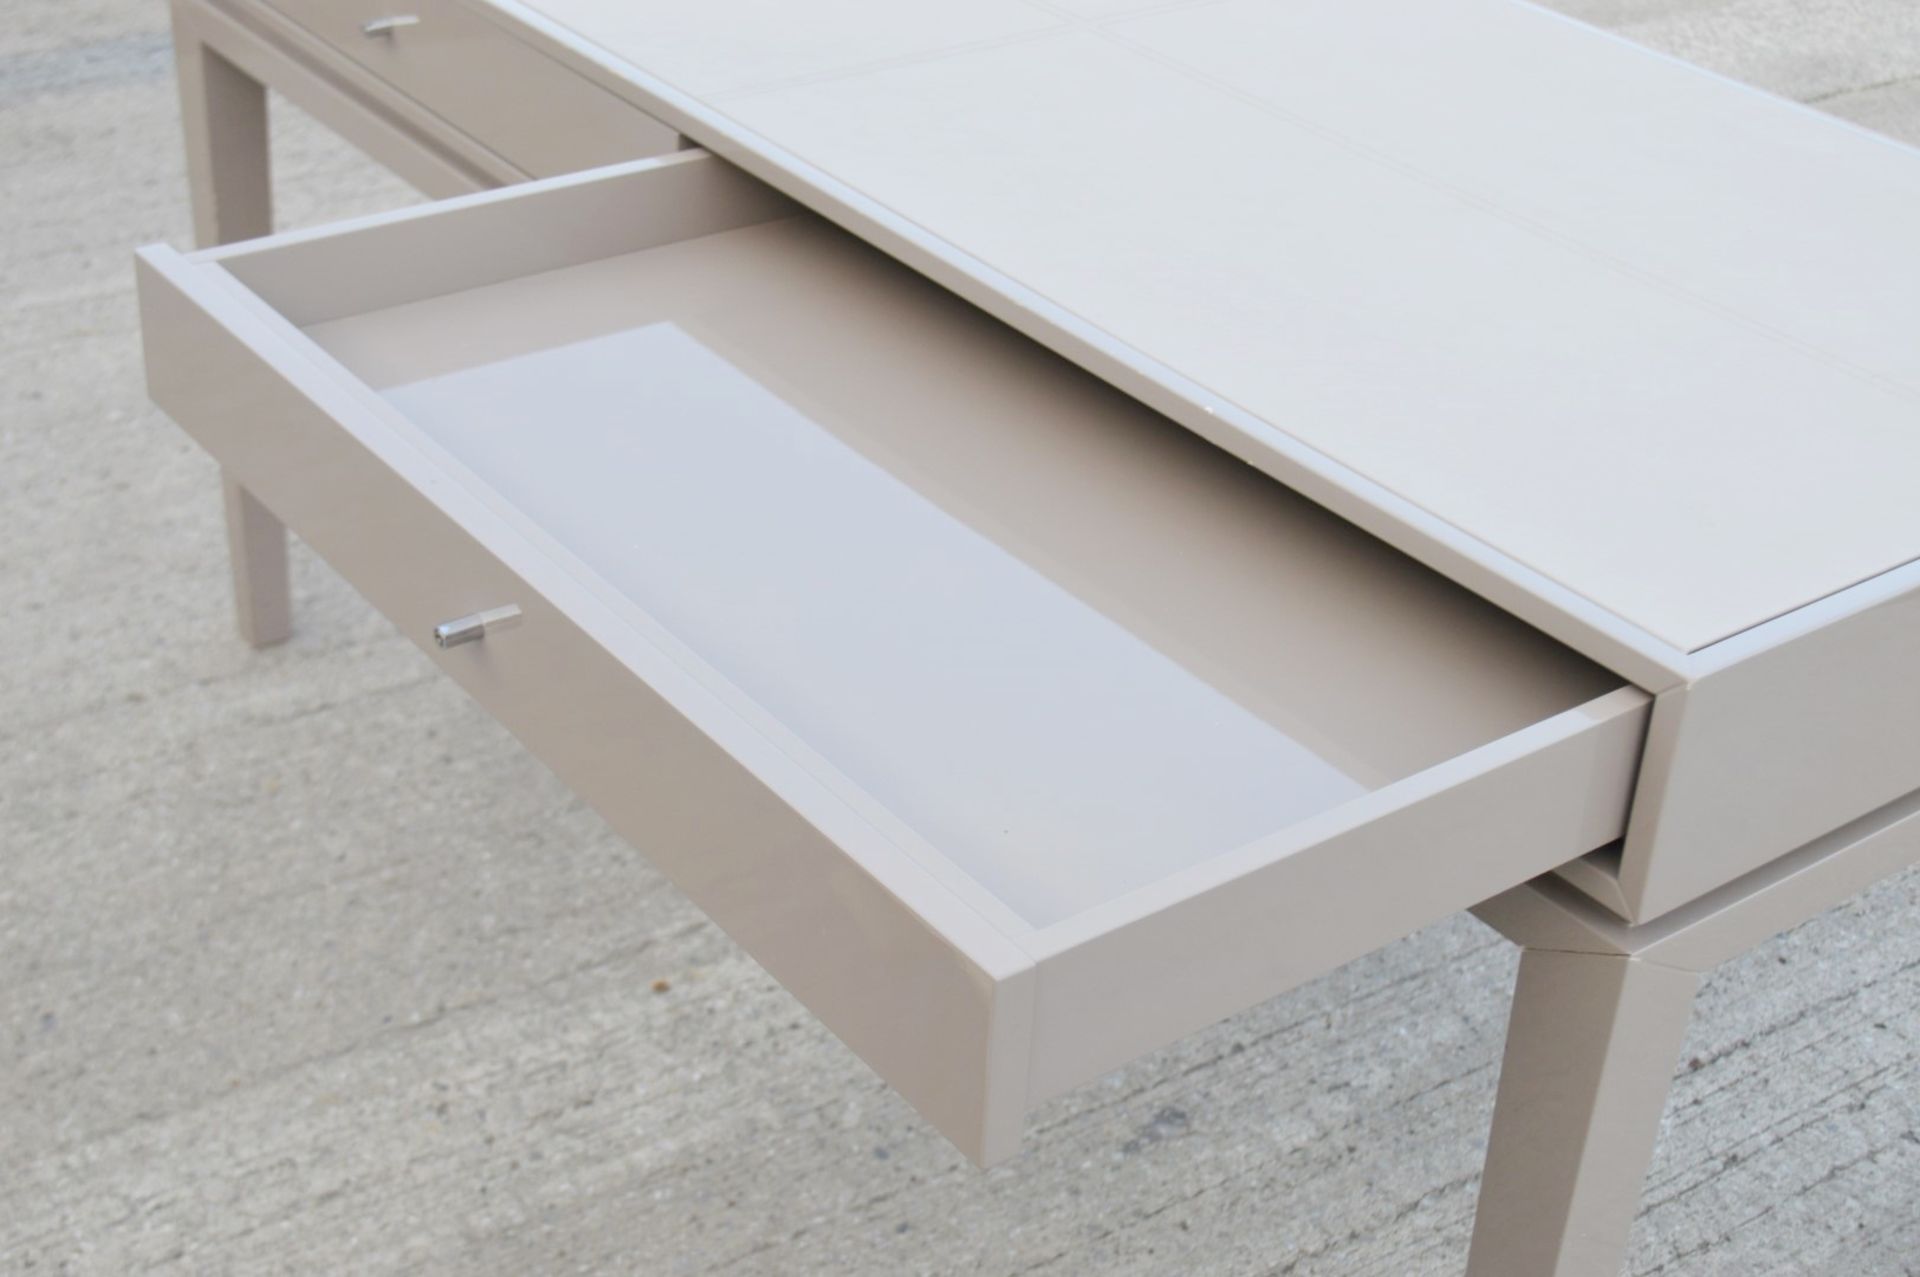 1 x FRATO 'Buzios' Designer Desk - Made In Italy - 160 x D65 x H78cm - Original Price £2,759 - Image 9 of 13